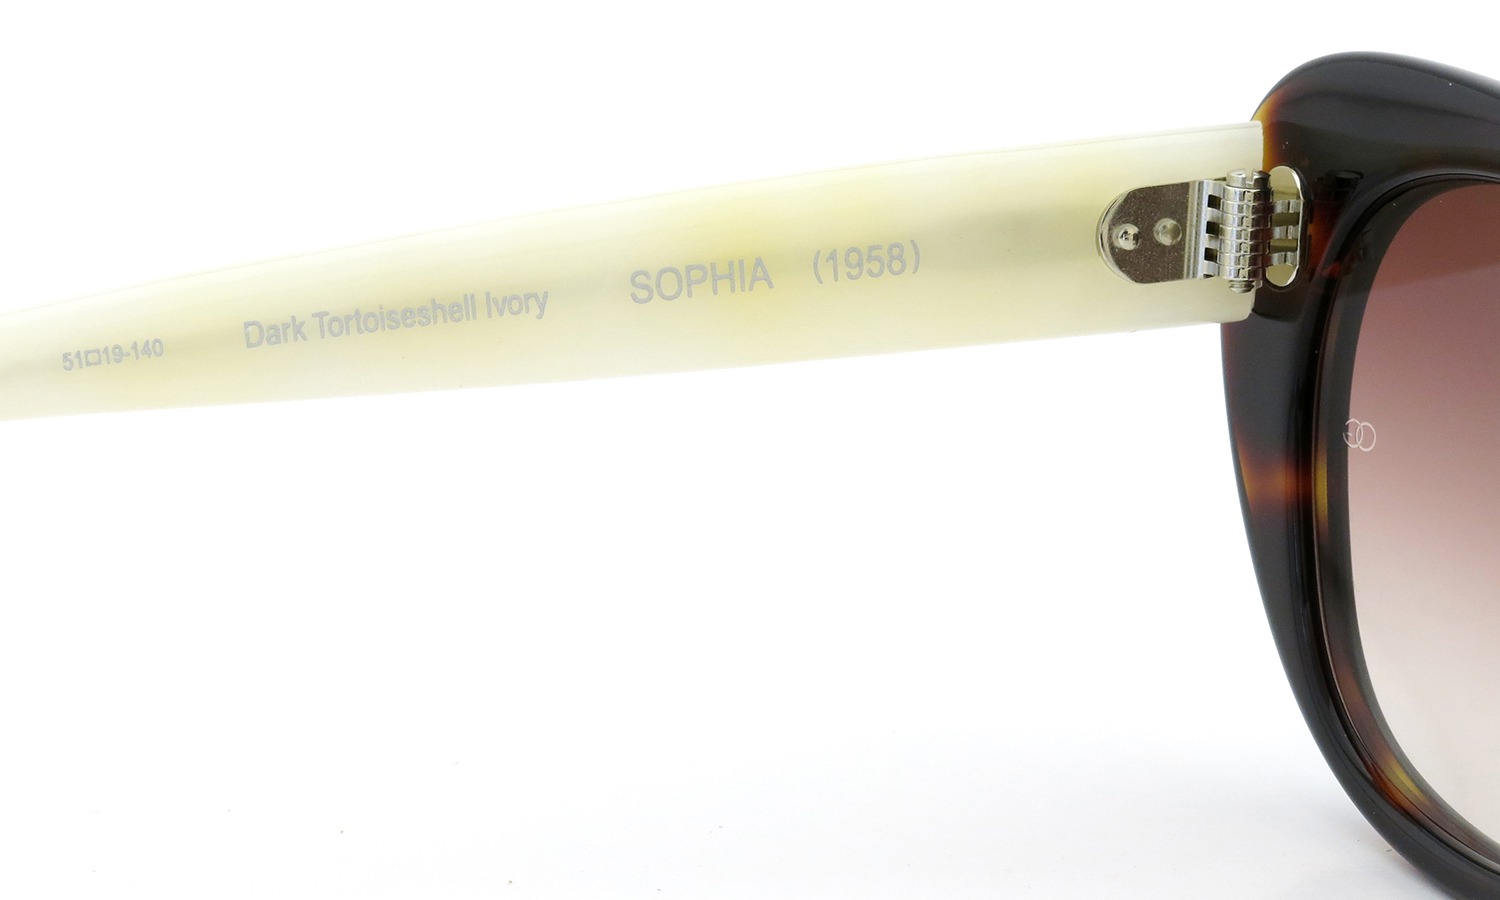 オリバーゴールドスミス サングラス SOPHIA(1958) ソフィア Dark Tortoiseshell Ivory